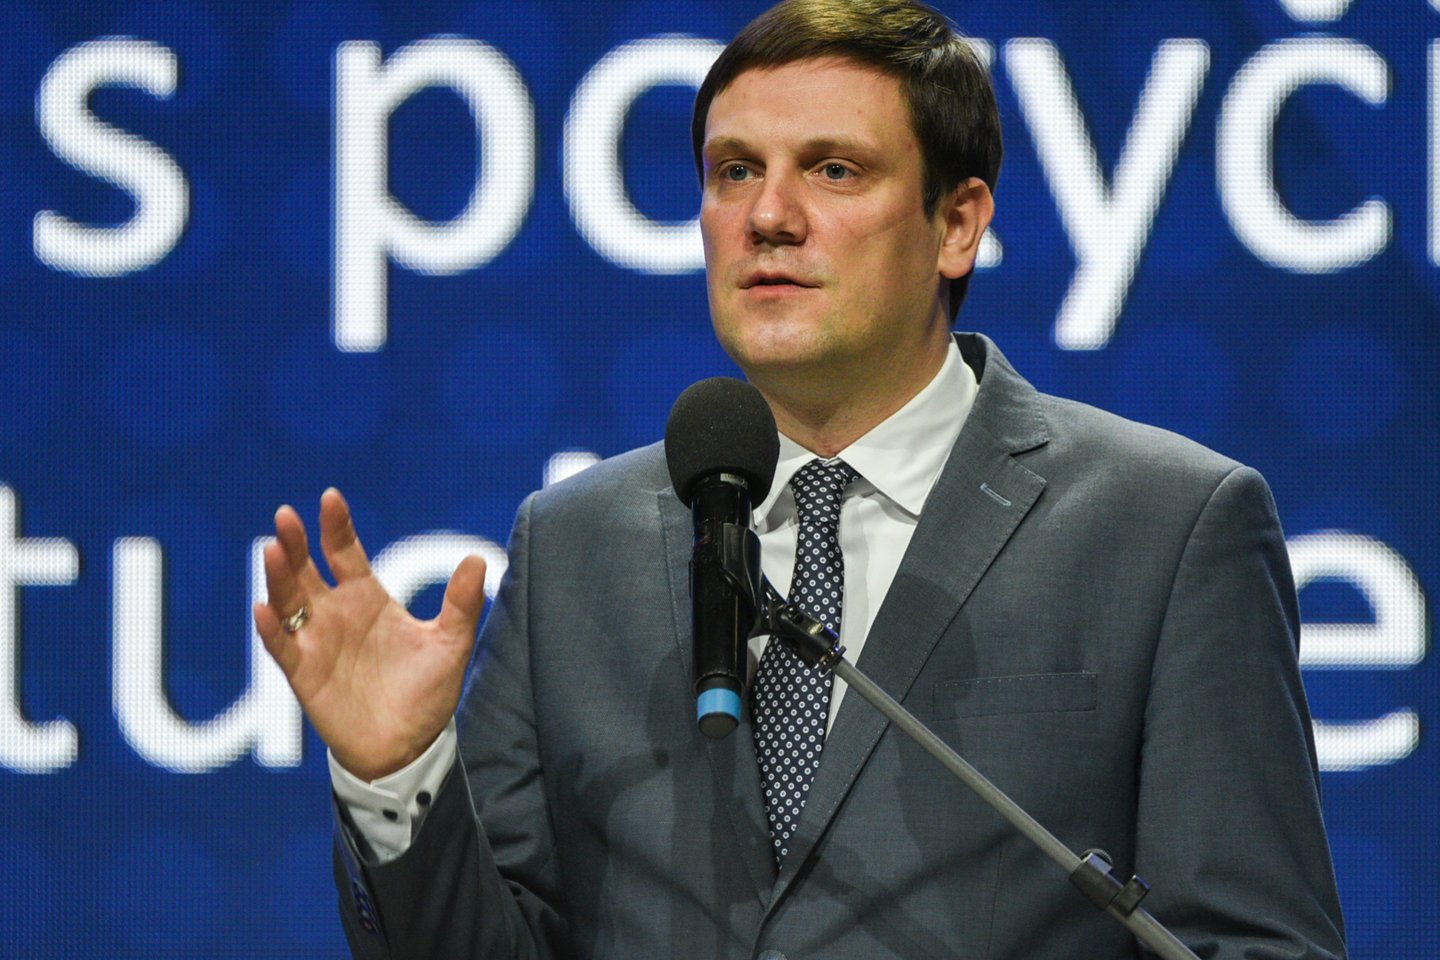 Šeštadienį įsteigtos politinės partijos – Demokratų sąjungos „Vardan Lietuvos“ pirmininku išrinktas Saulius Skvernelis.<br>A.Kubaičio nuotr.